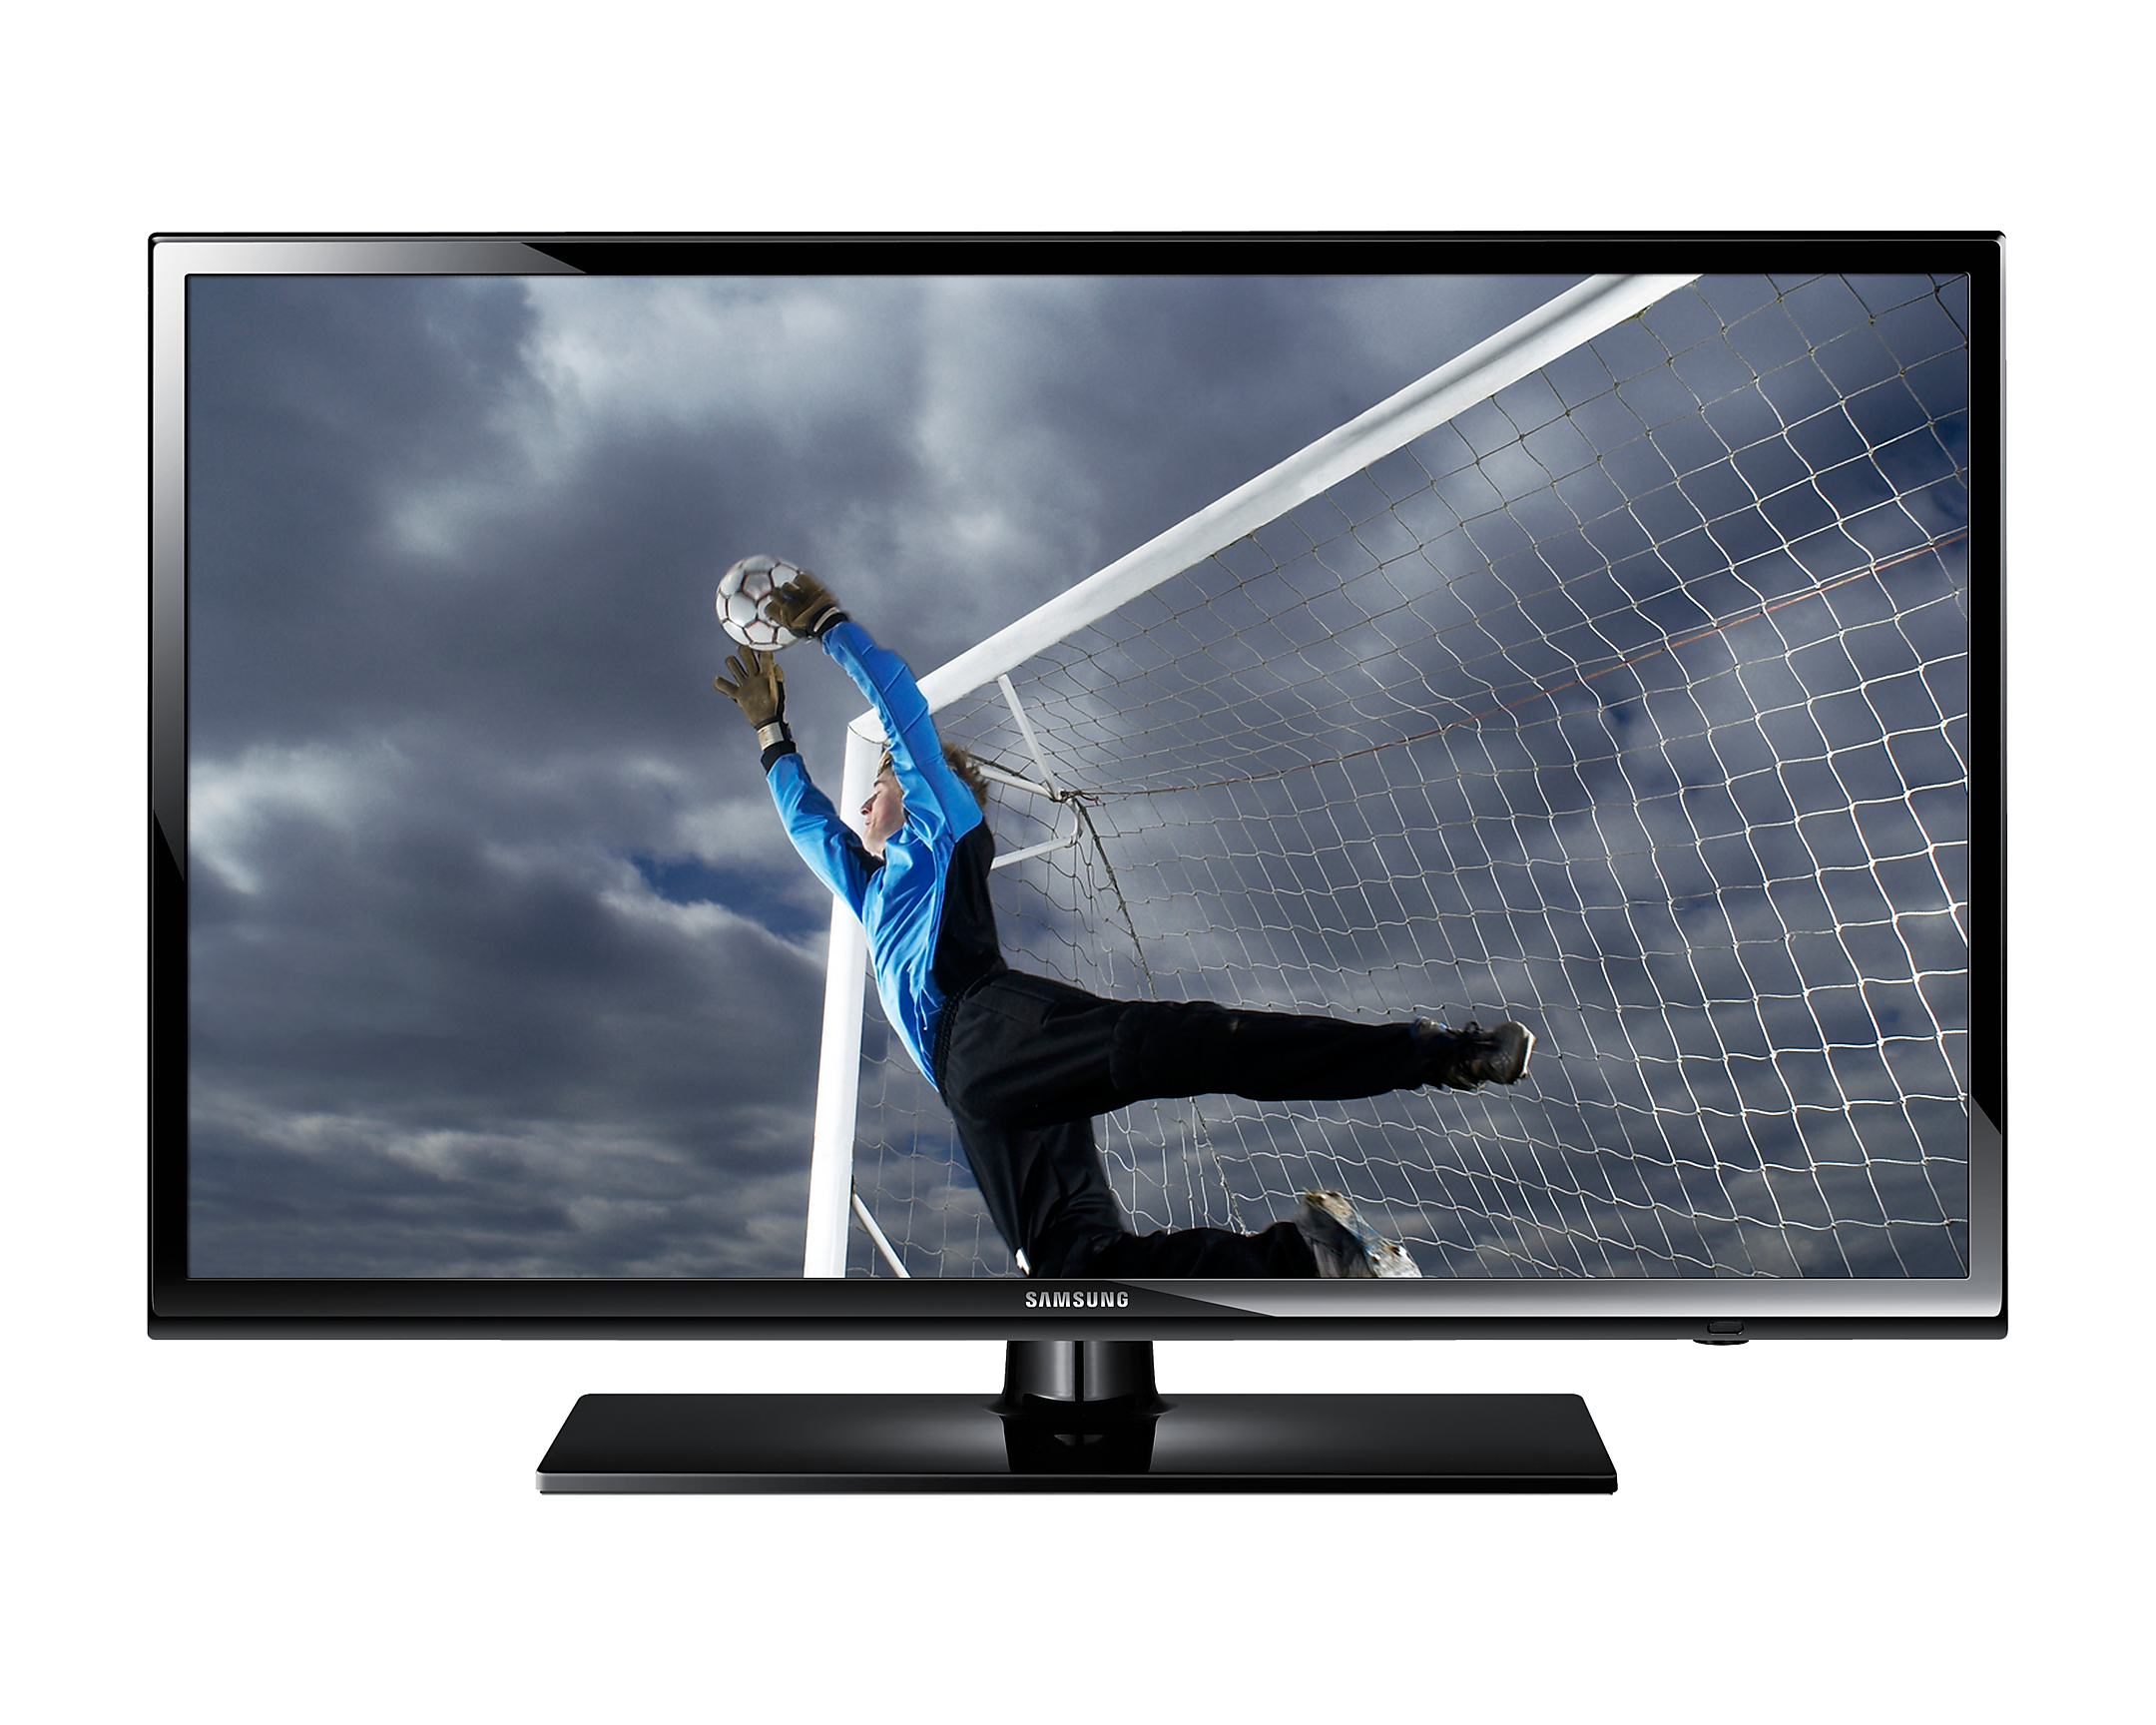 Акции телевизор 32 дюйма купить. Телевизор Samsung ue32. Samsung ue40h5303 led. Samsung ue32fh4003w. Samsung ue32eh4003 led.